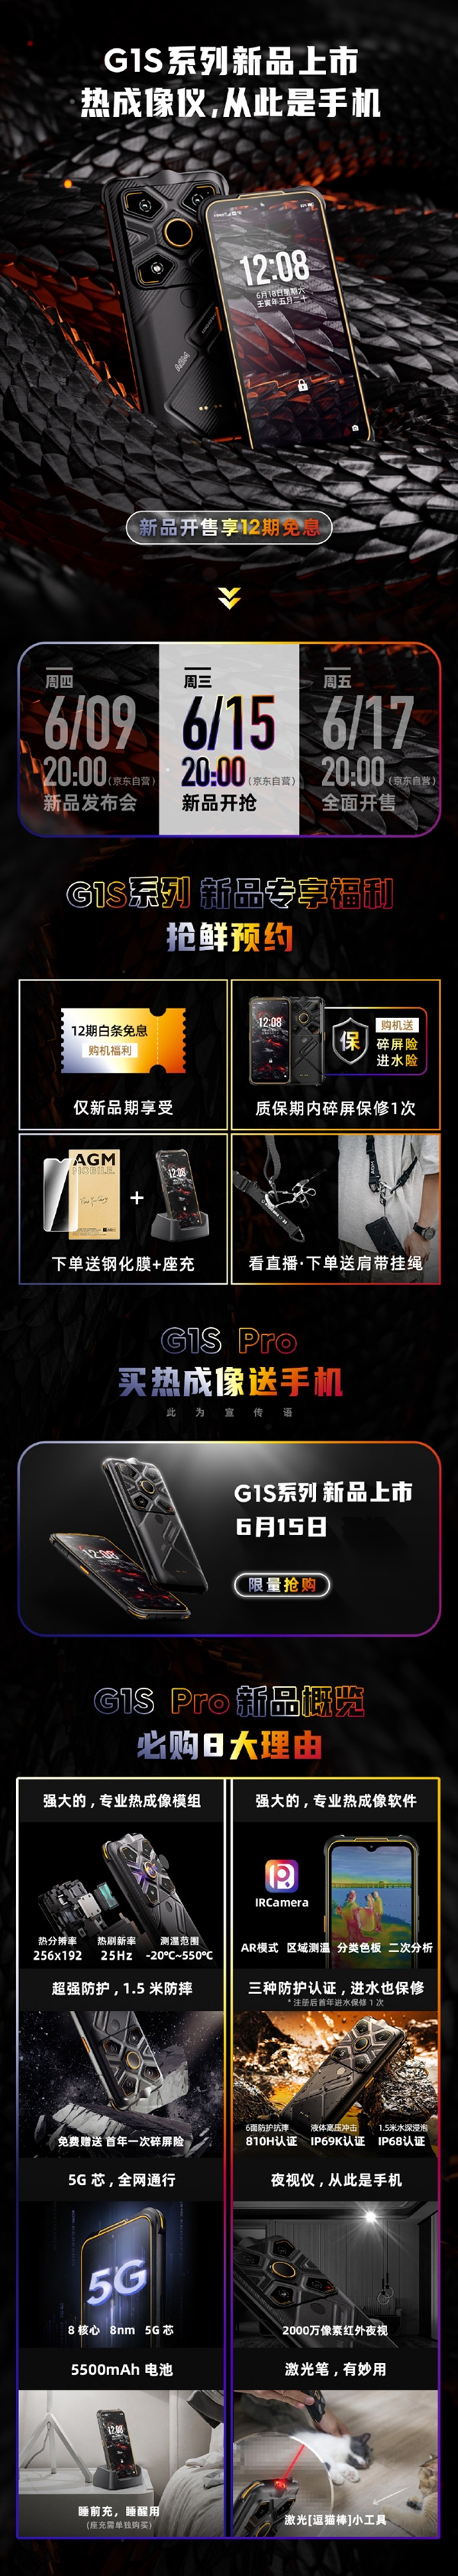 漆黑一片也能万物可见 红外5G手机AGM G1S Pro开售